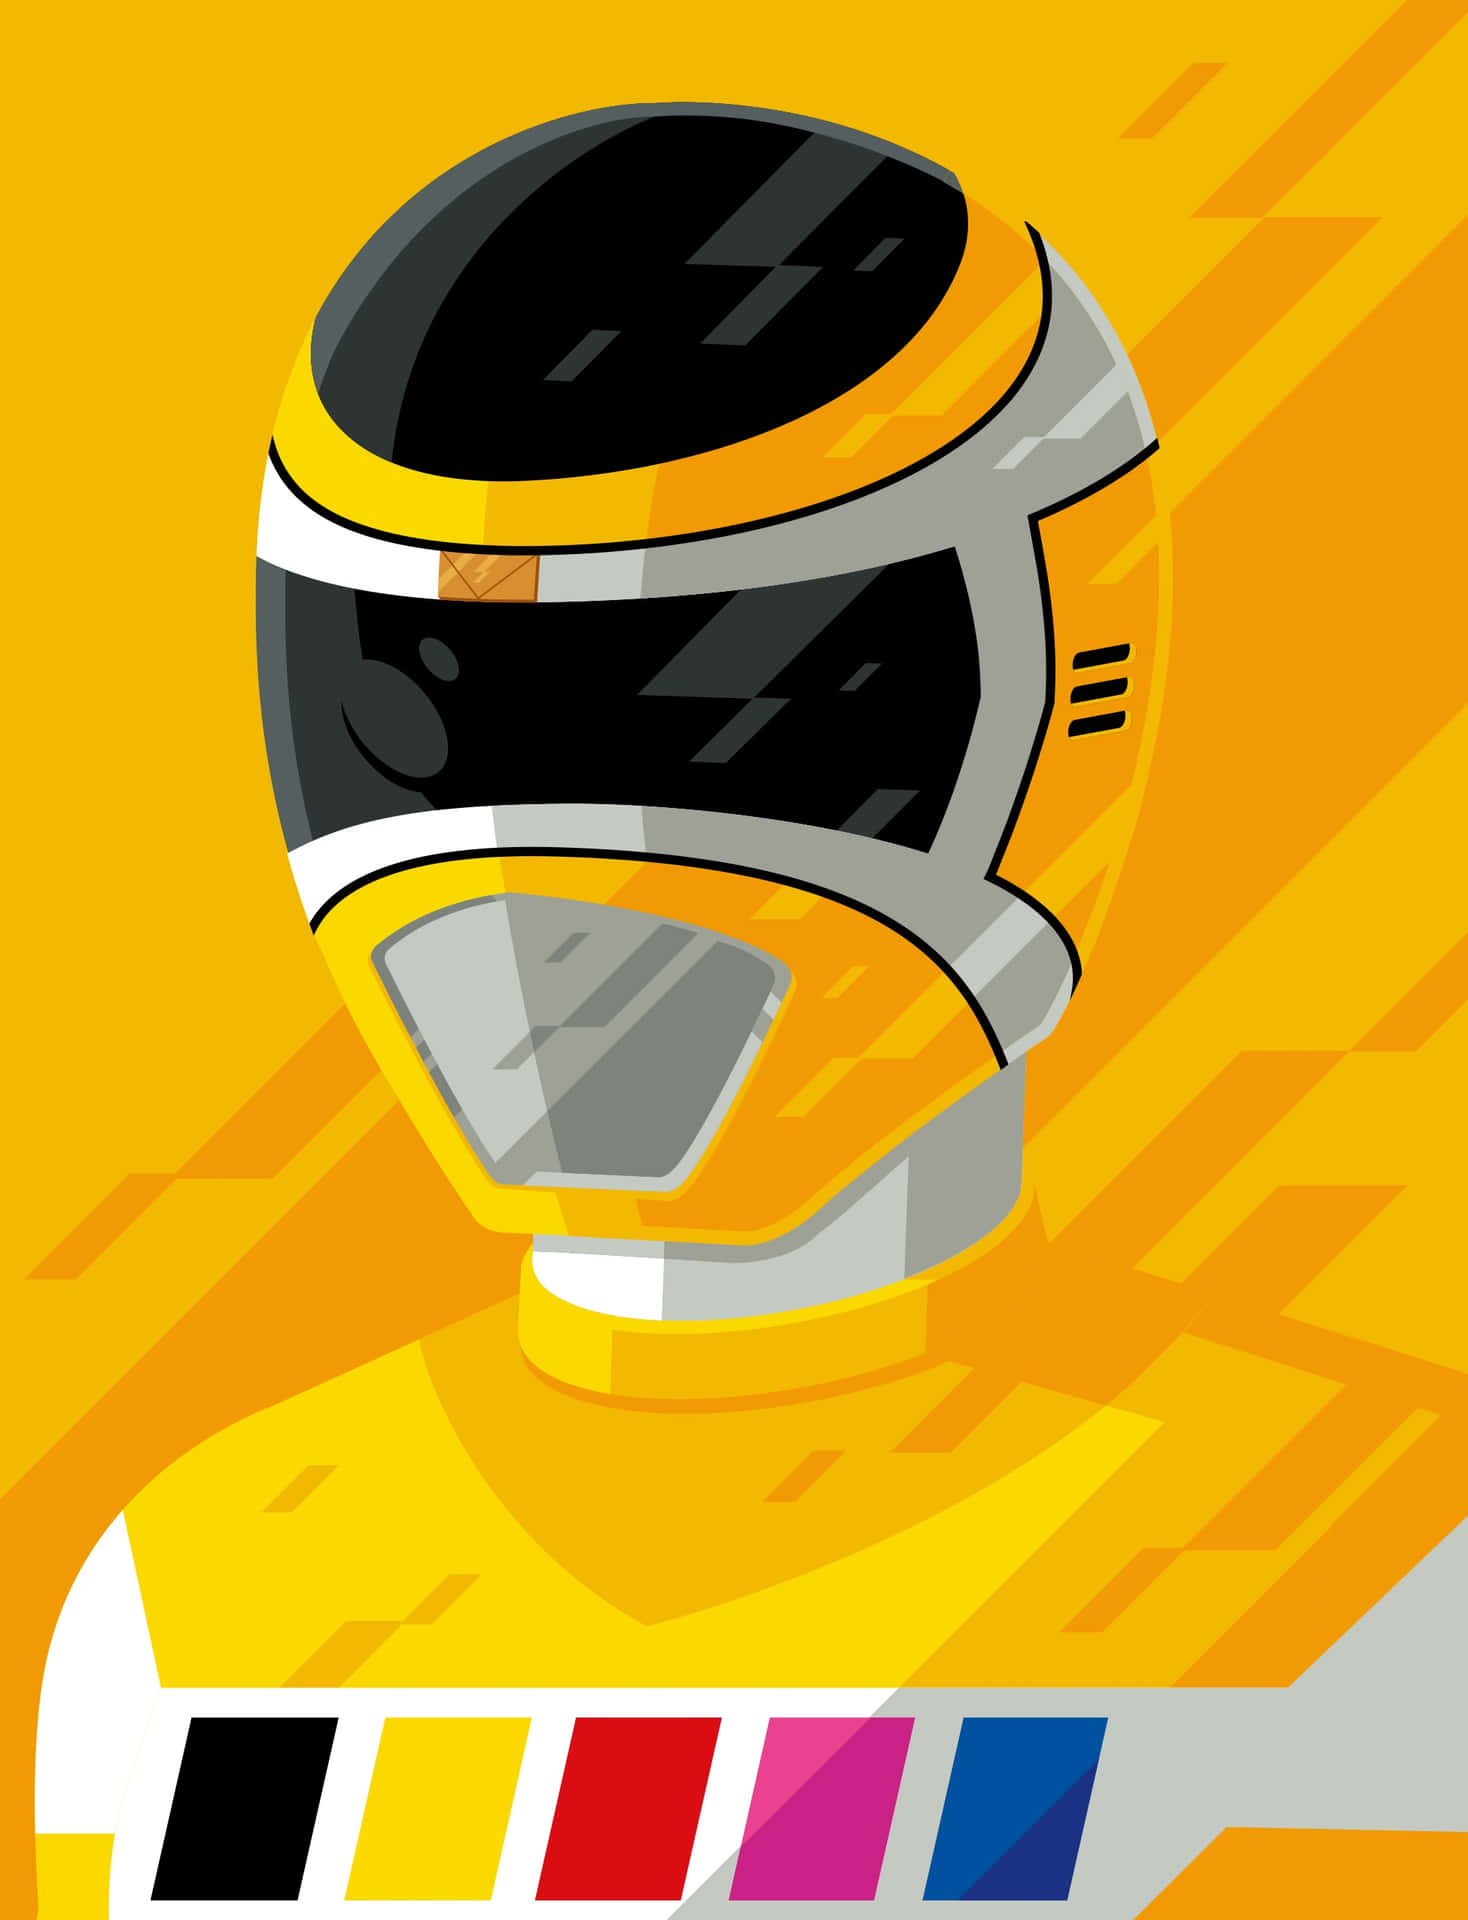 Yellow Ranger Helmet Illustration Wallpaper